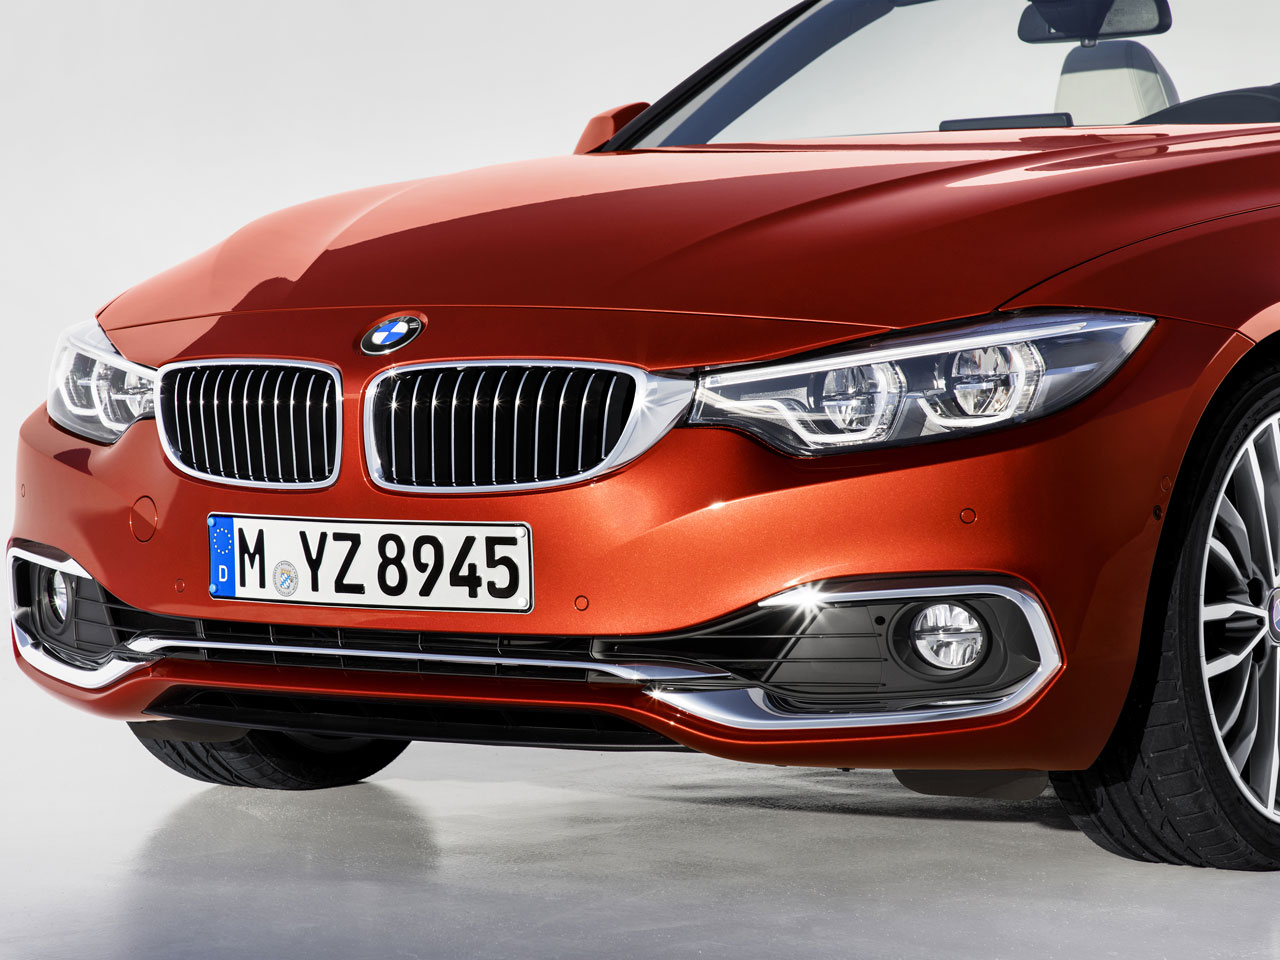 BMW 4シリーズ カブリオレ 2014年モデルの価格・グレード一覧 価格.com